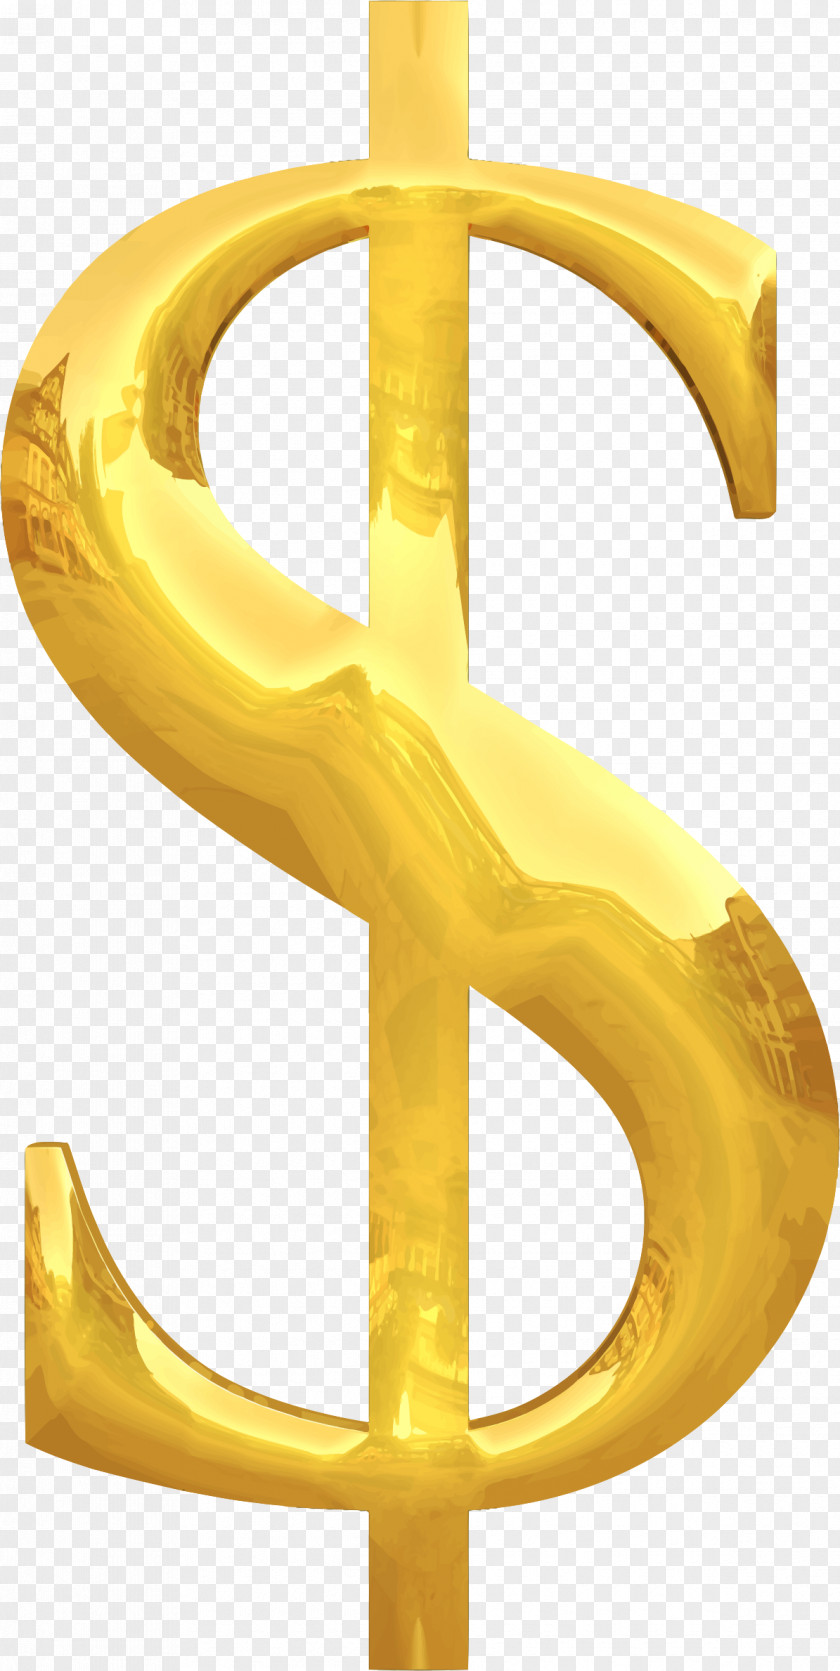 Money Bag Currency Symbol Dollar Sign Finance PNG